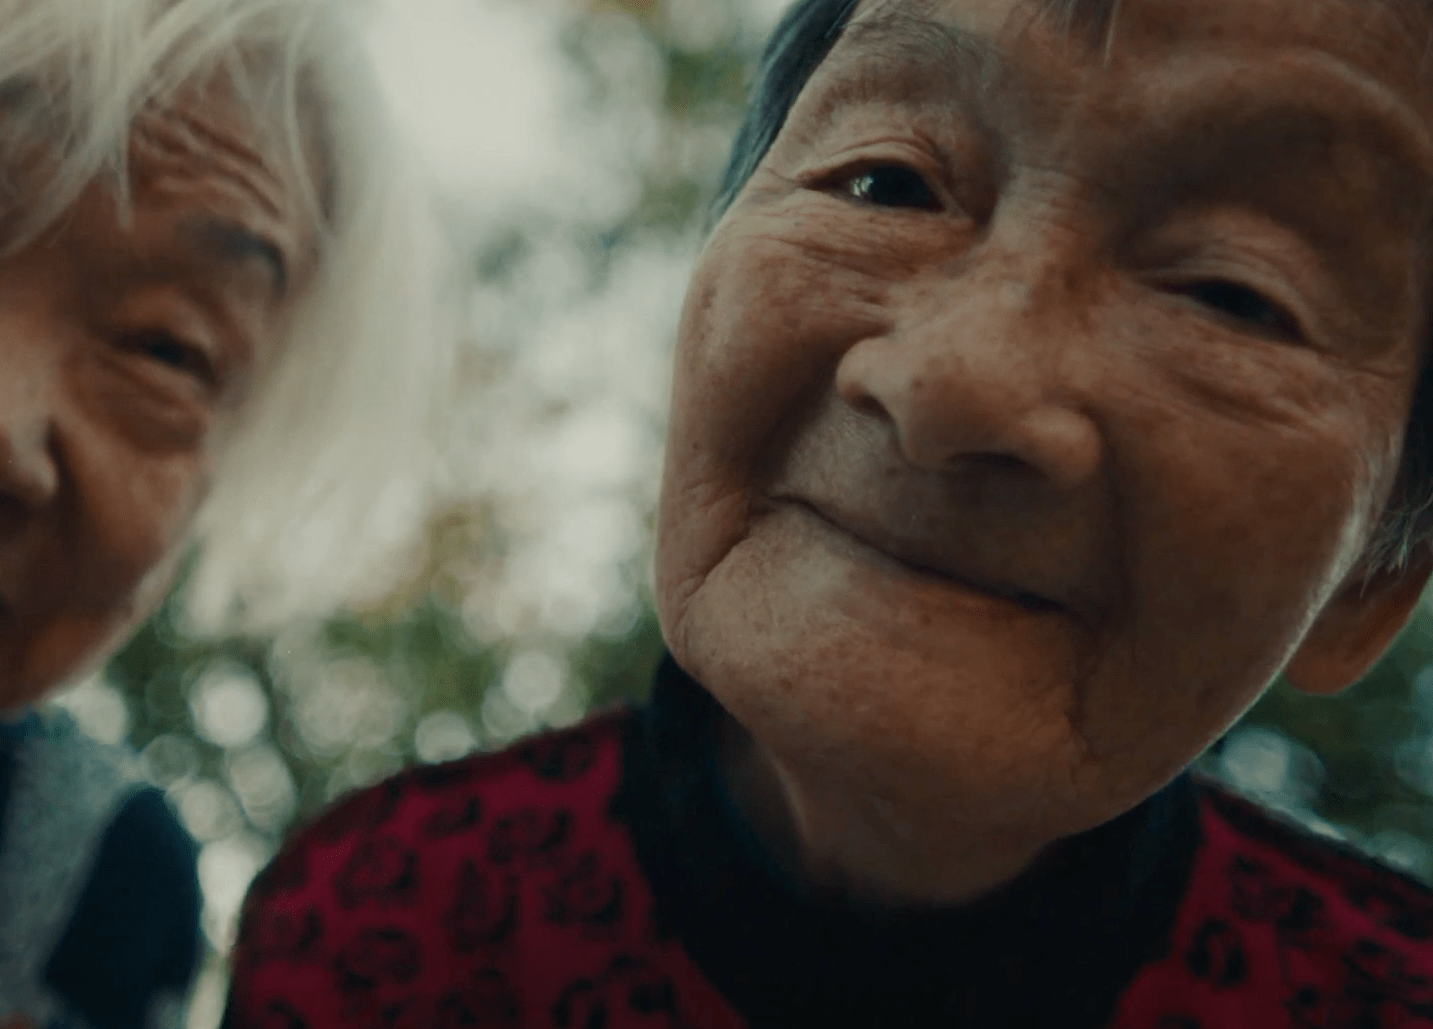 Cena do curta-metragem Nai Nai & Wài Pó. A foto mostra as duas mulheres e protagonistas, Nai Nai e Wài Pó, próximas da câmera e olhando-a com feições felizes, com pequenos sorrisos. No plano de fundo, há folhagens de árvores